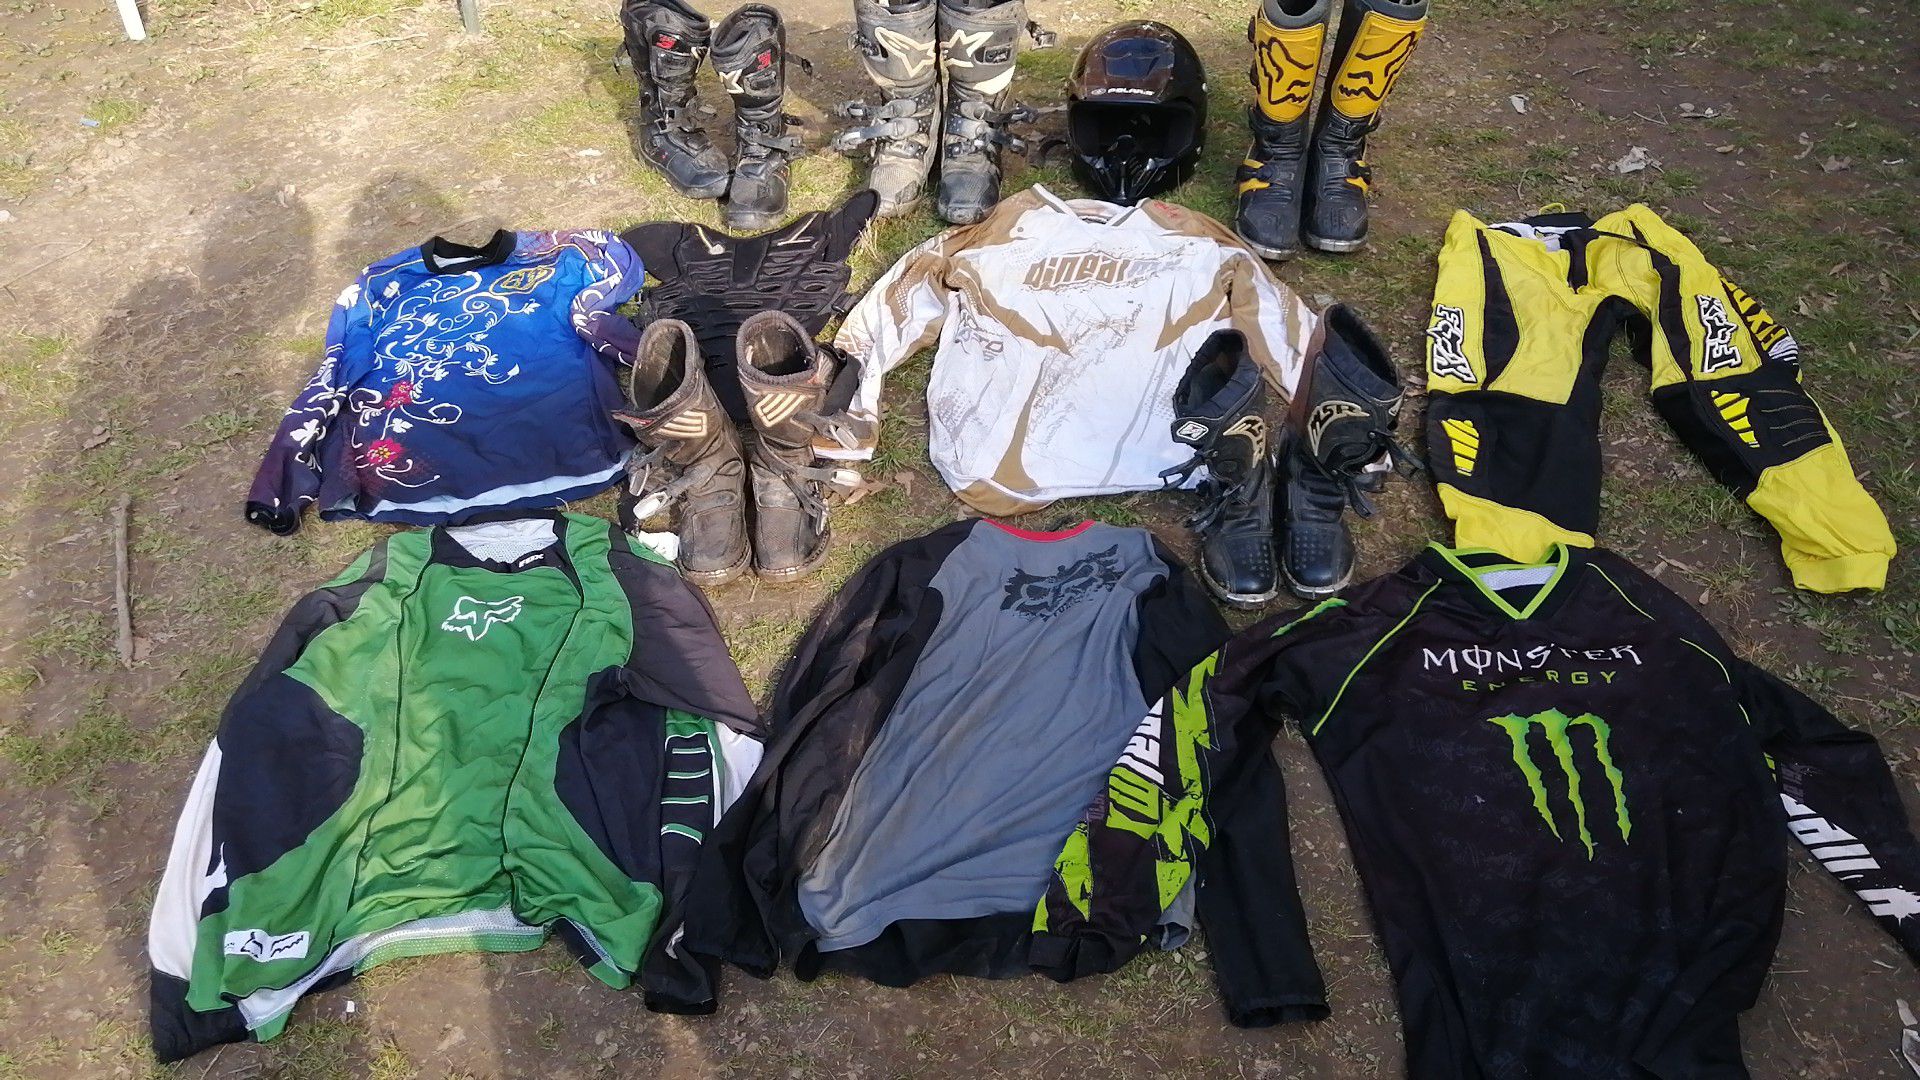 Motocross clothes